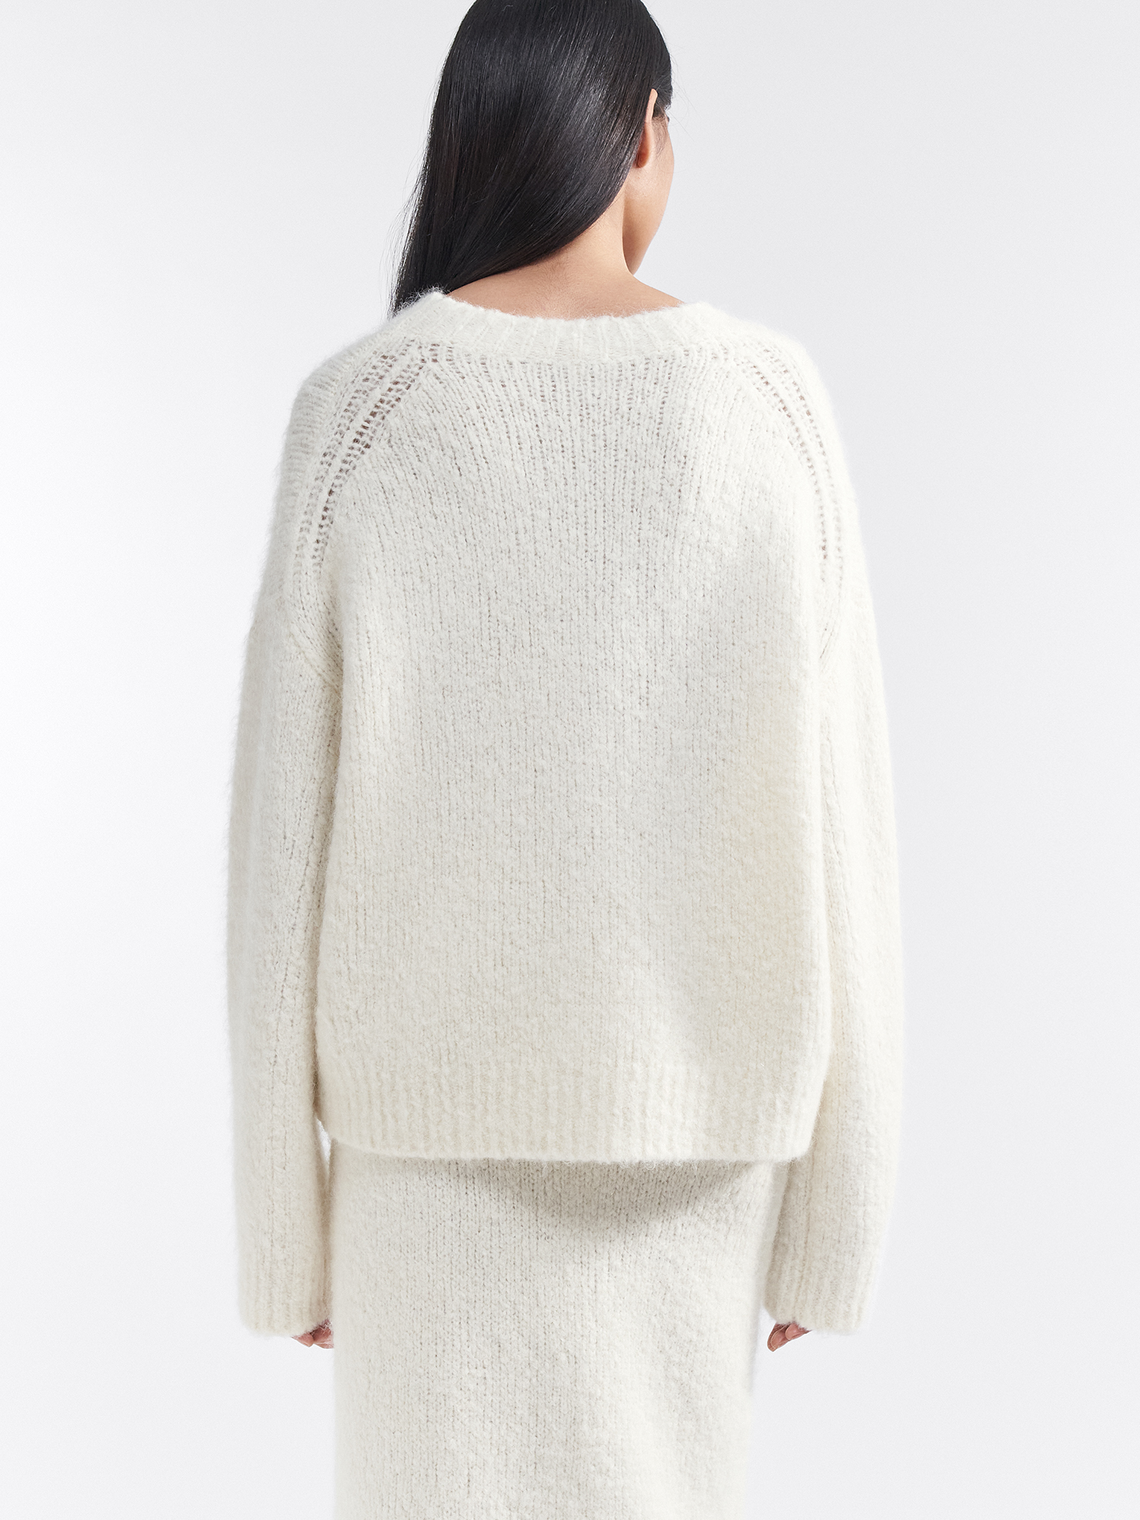 Sara sweater by Filippa K - white